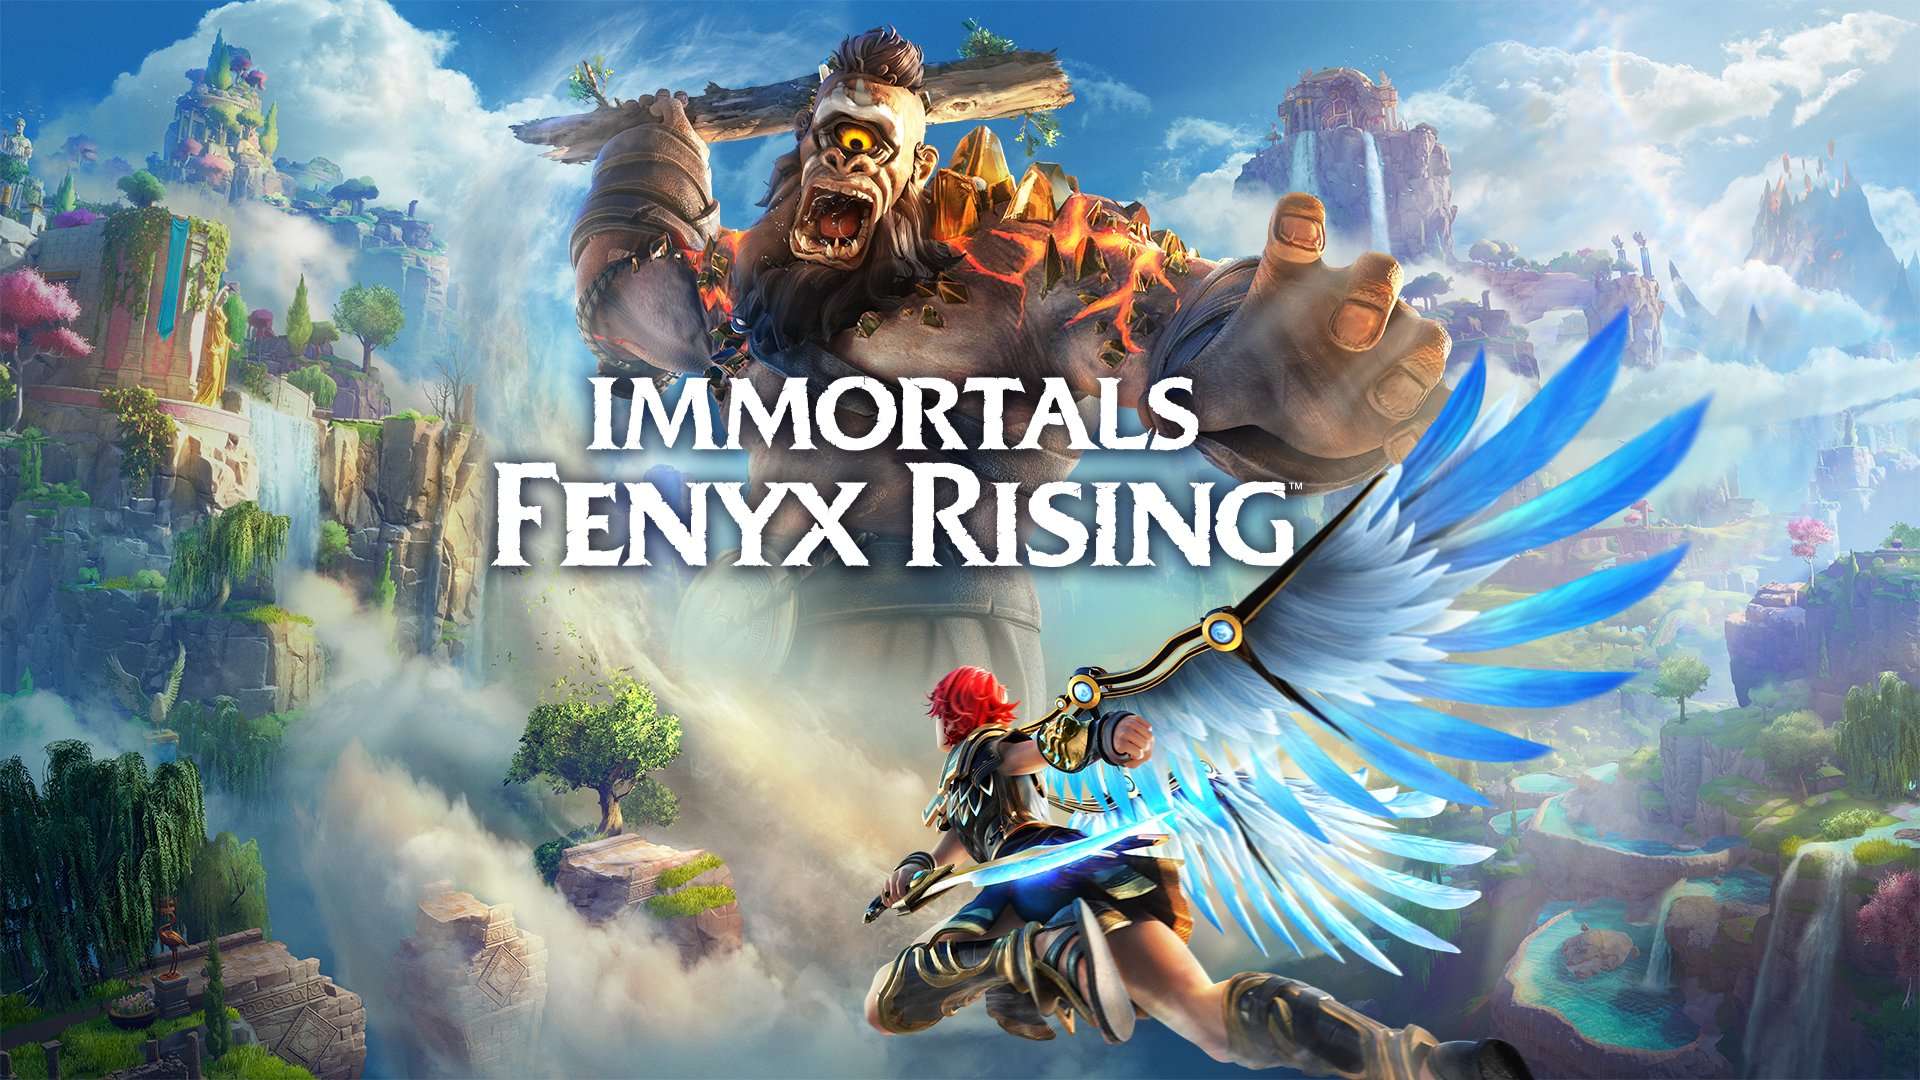 Exploración y combate en el extenso gameplay de Immortals Fenyx Rising